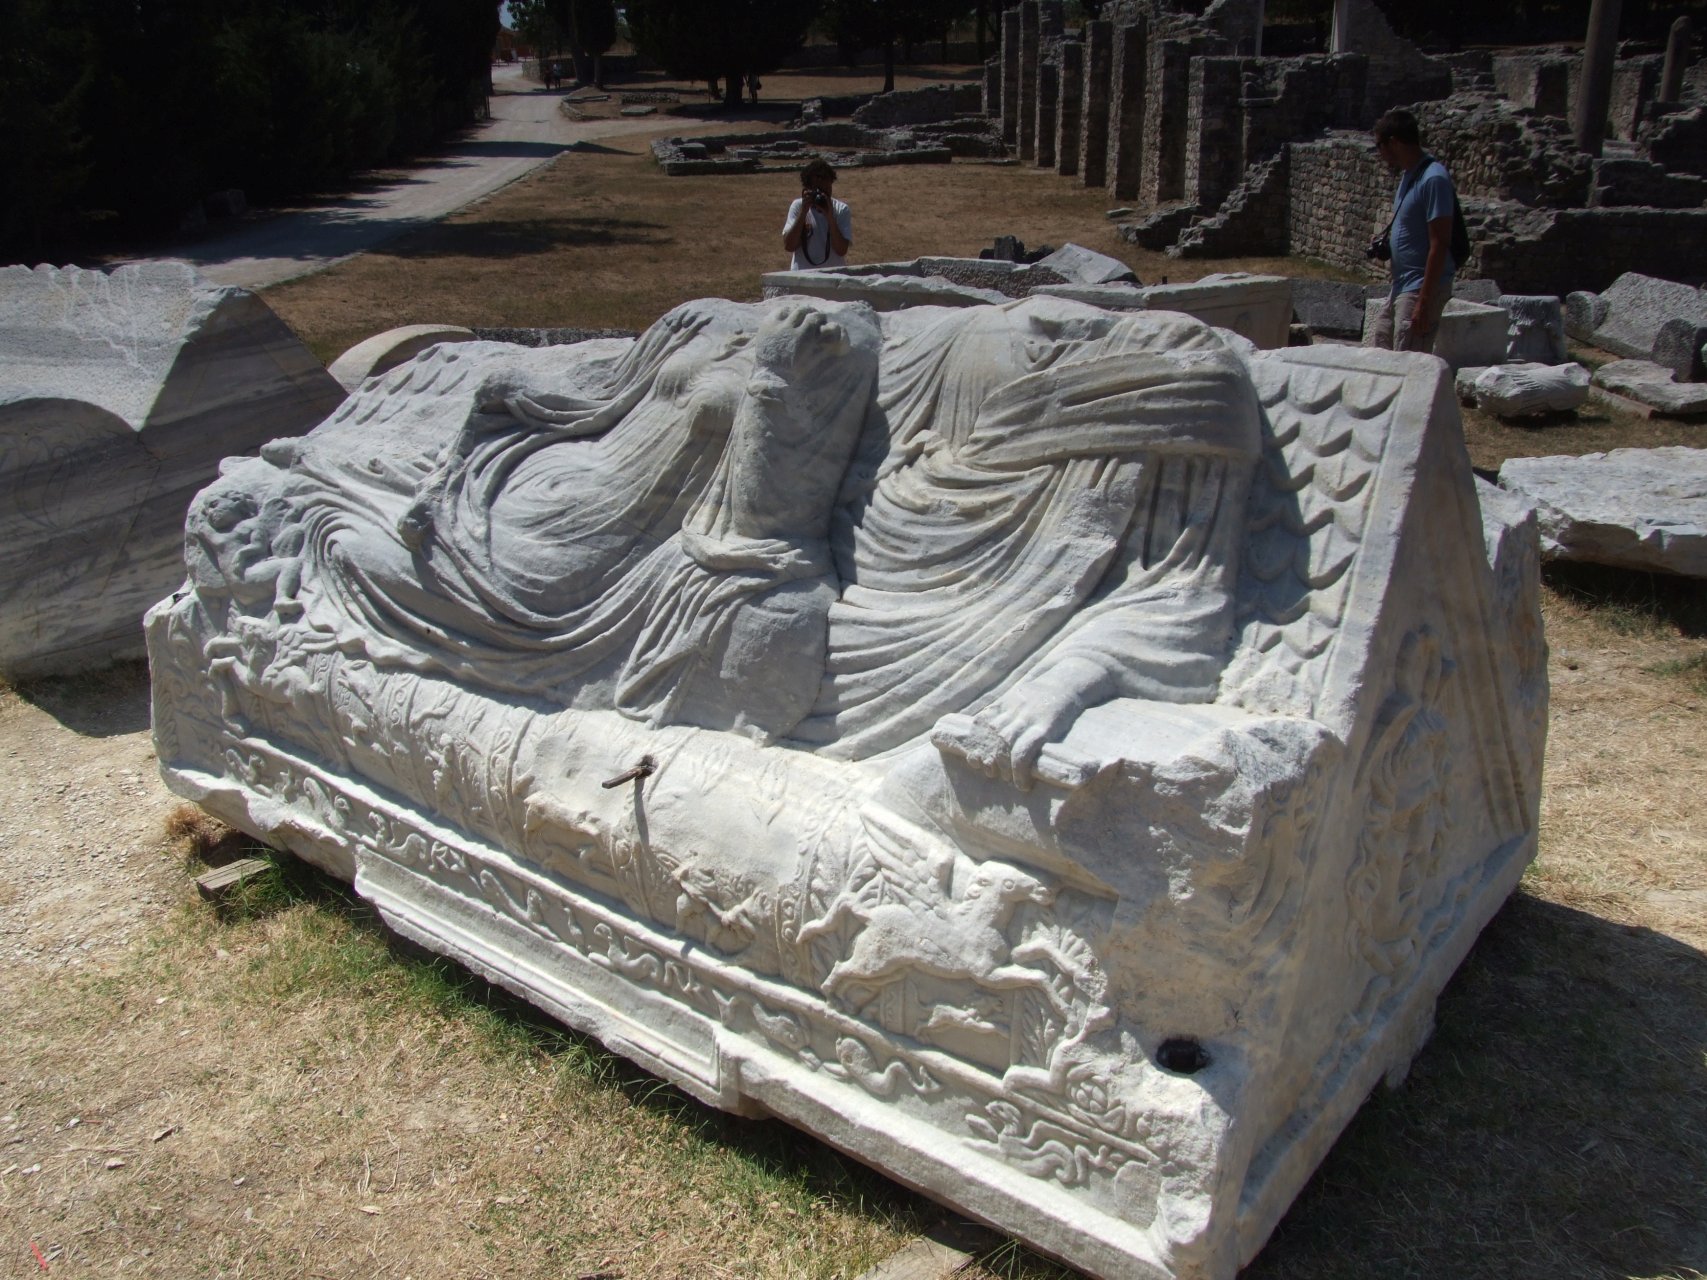 Bogato zdobione sarkofagi